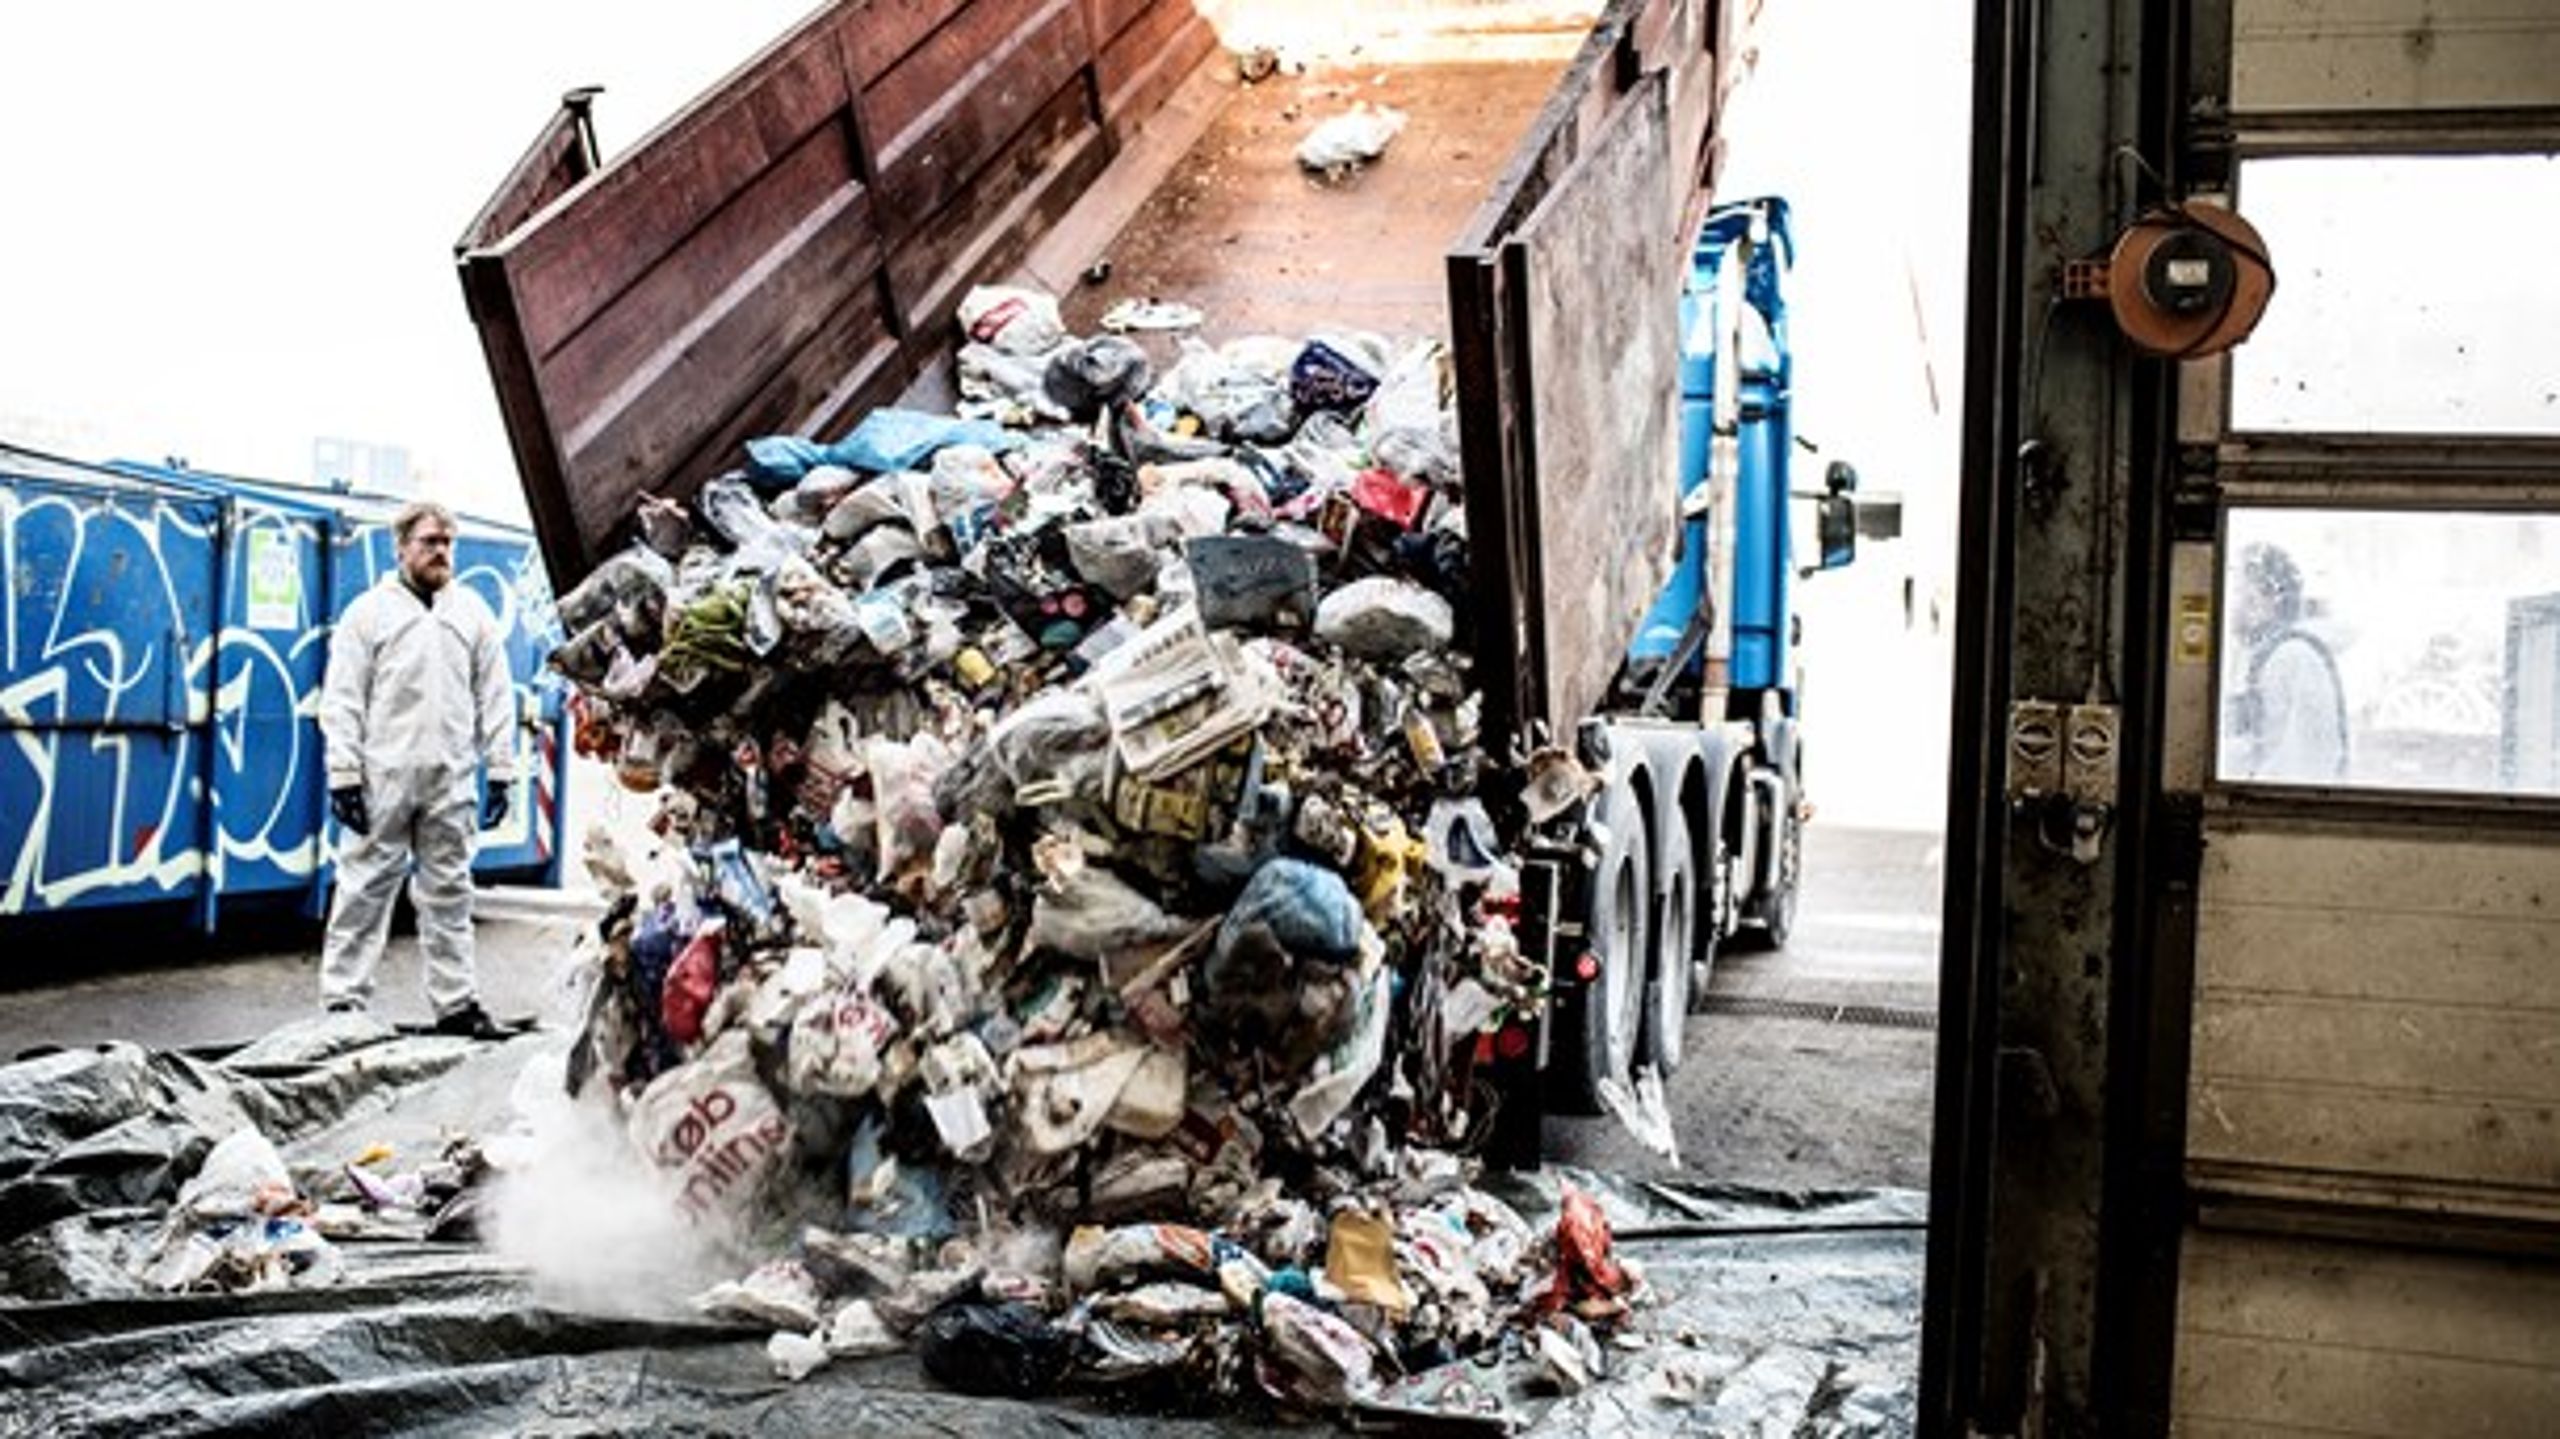 Danmark er et af EU-landene, der sorterer mest husholdningsaffald til genanvendelse. Men sorteringen af erhvervsaffald står stort set stille, skriver Dansk Affaldsforeningens direktør.